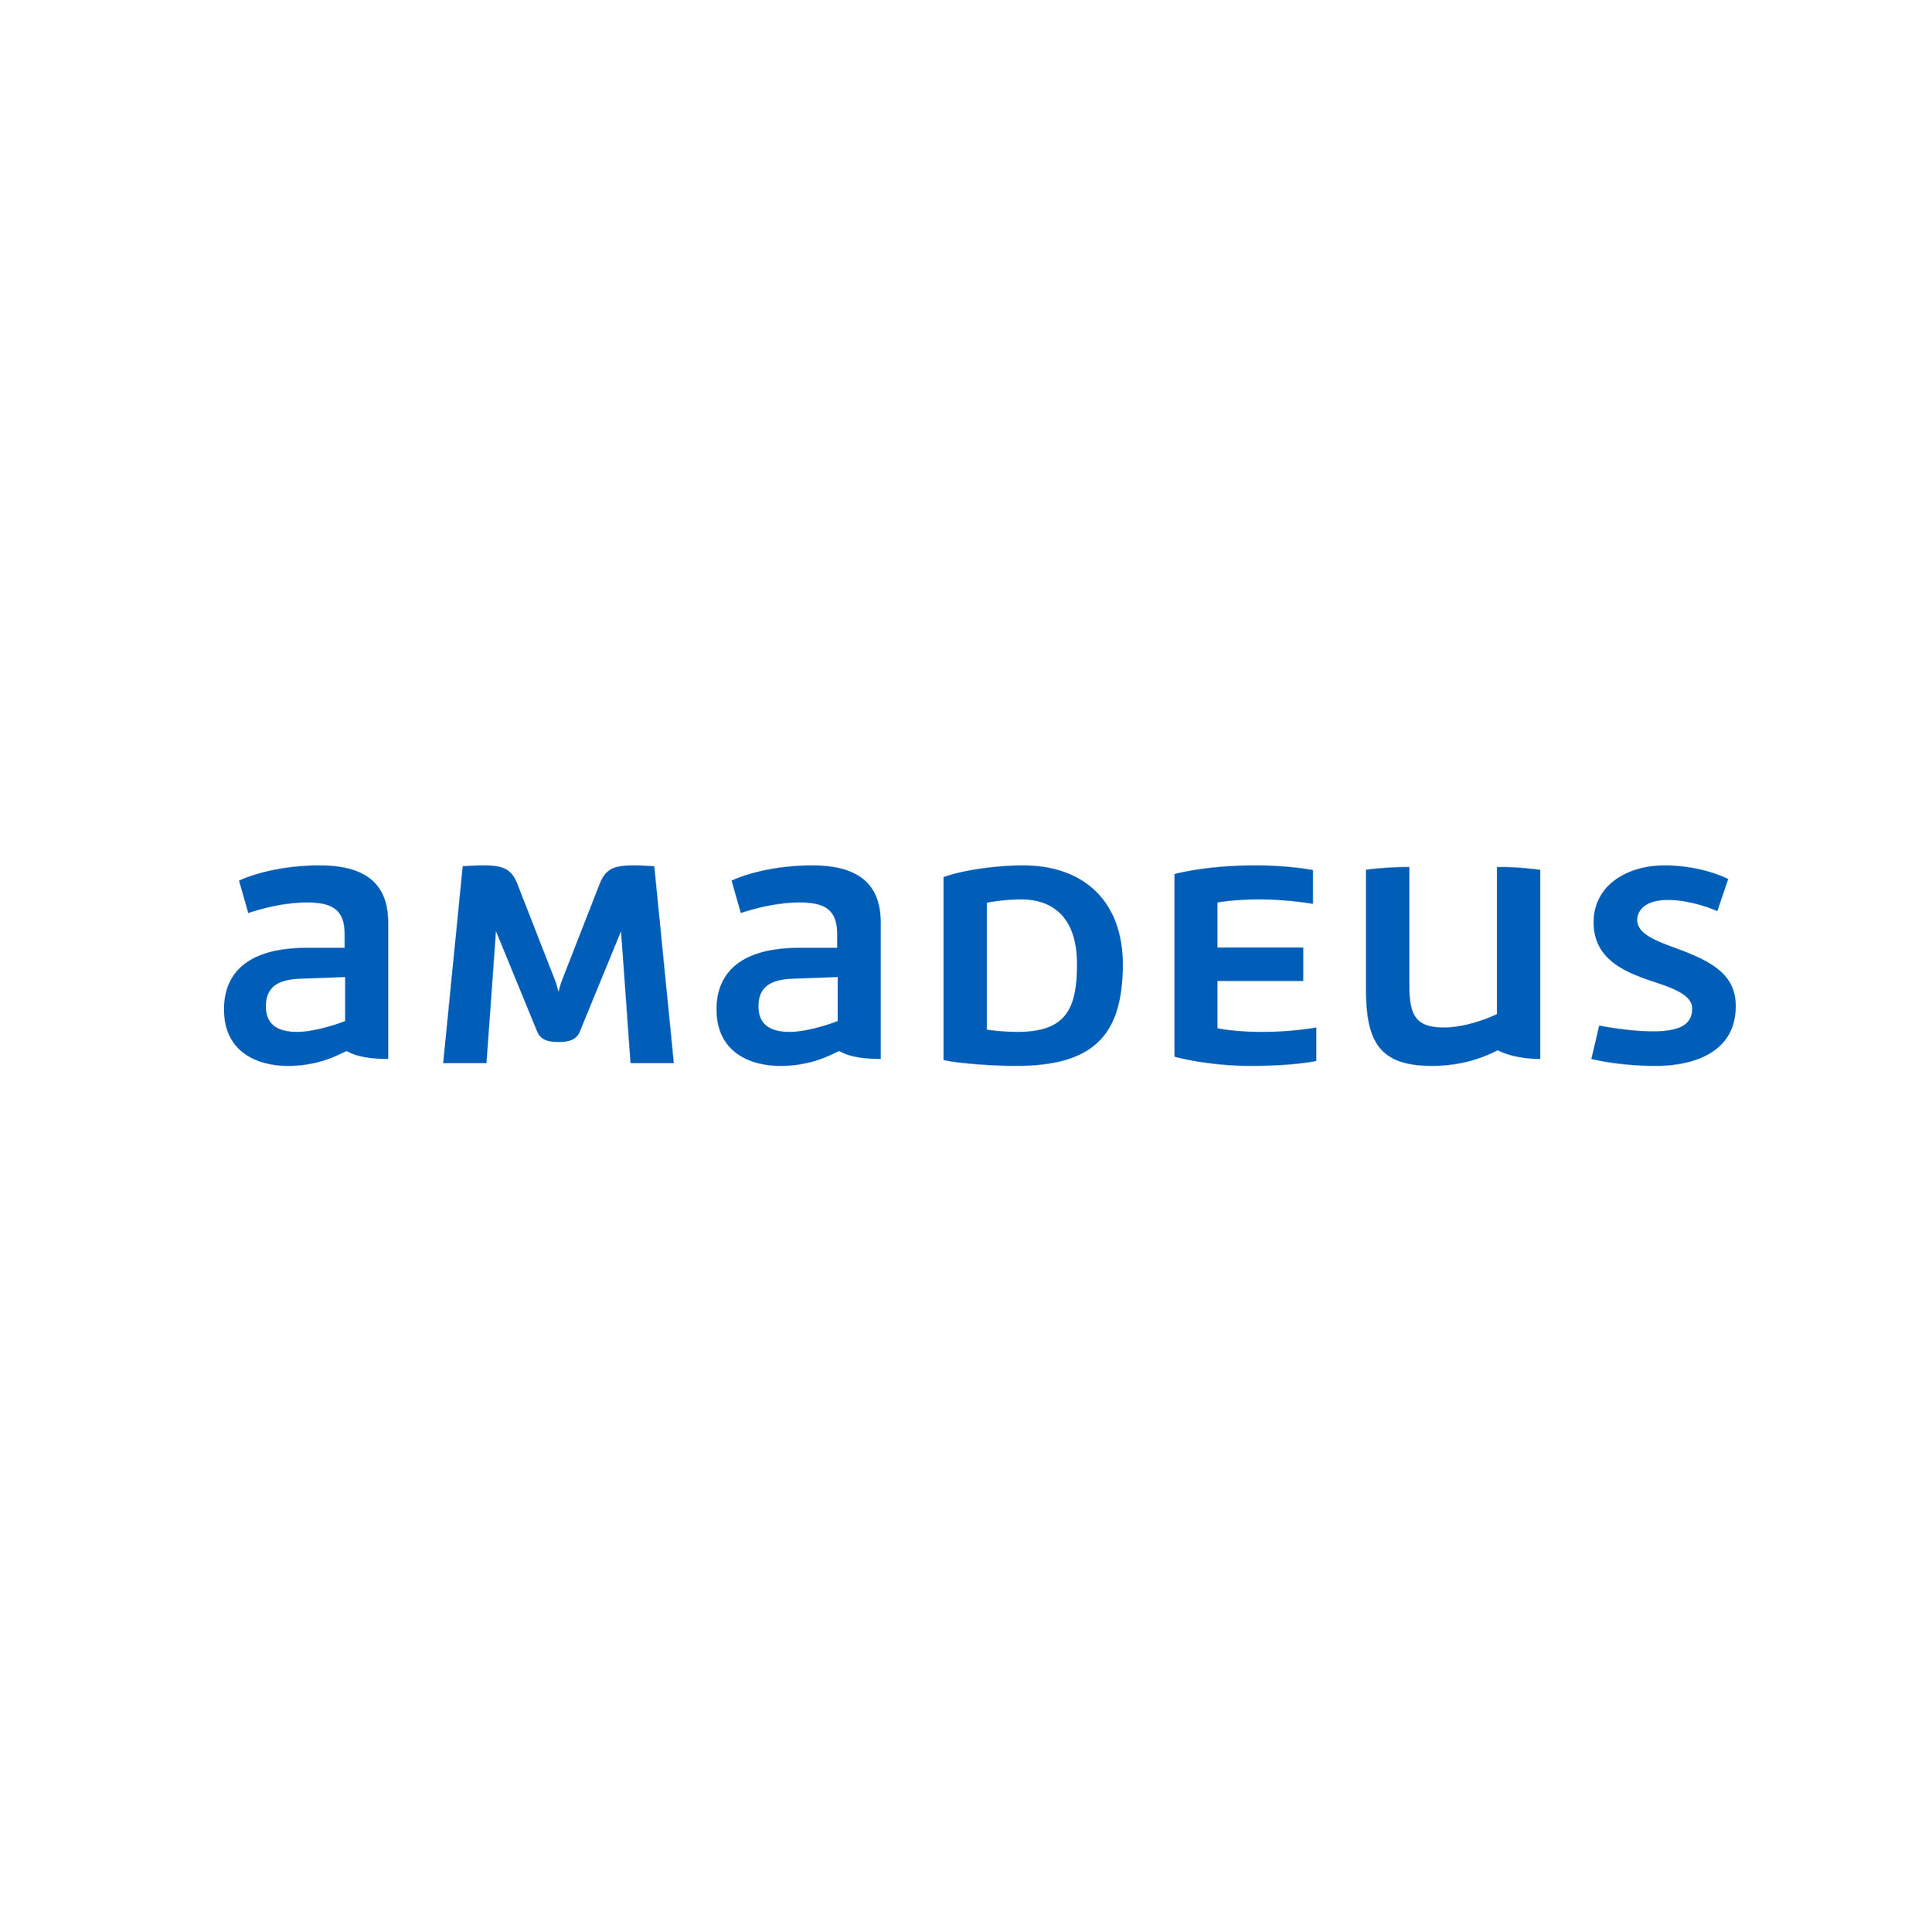 Amadeus connect. Логотип Amadeus.